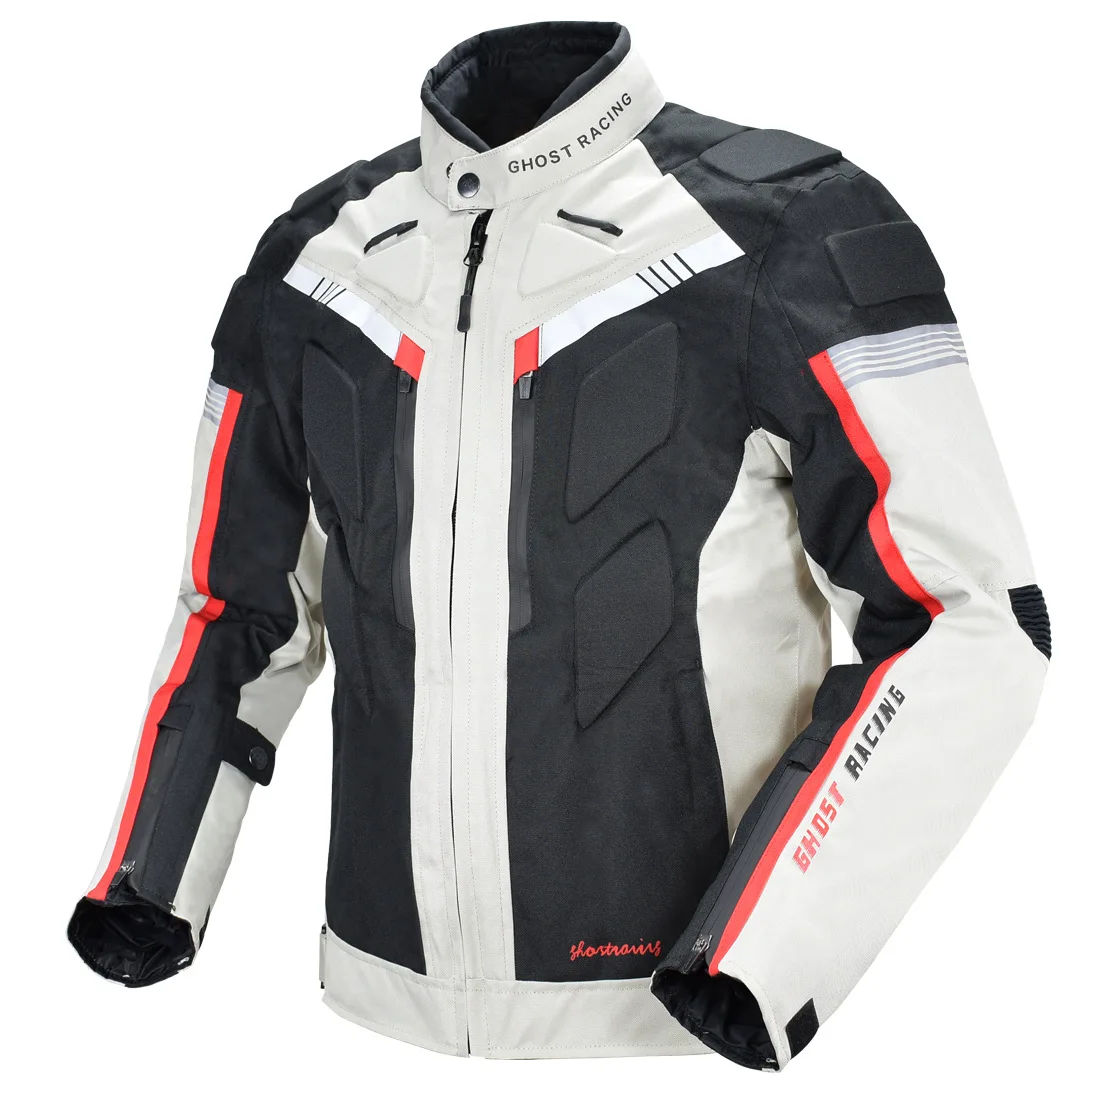 GHOST RACING Motorcycle Racing Jacket Man Waterproof Dirt Bike Pants Set With - £95.13 GBP+